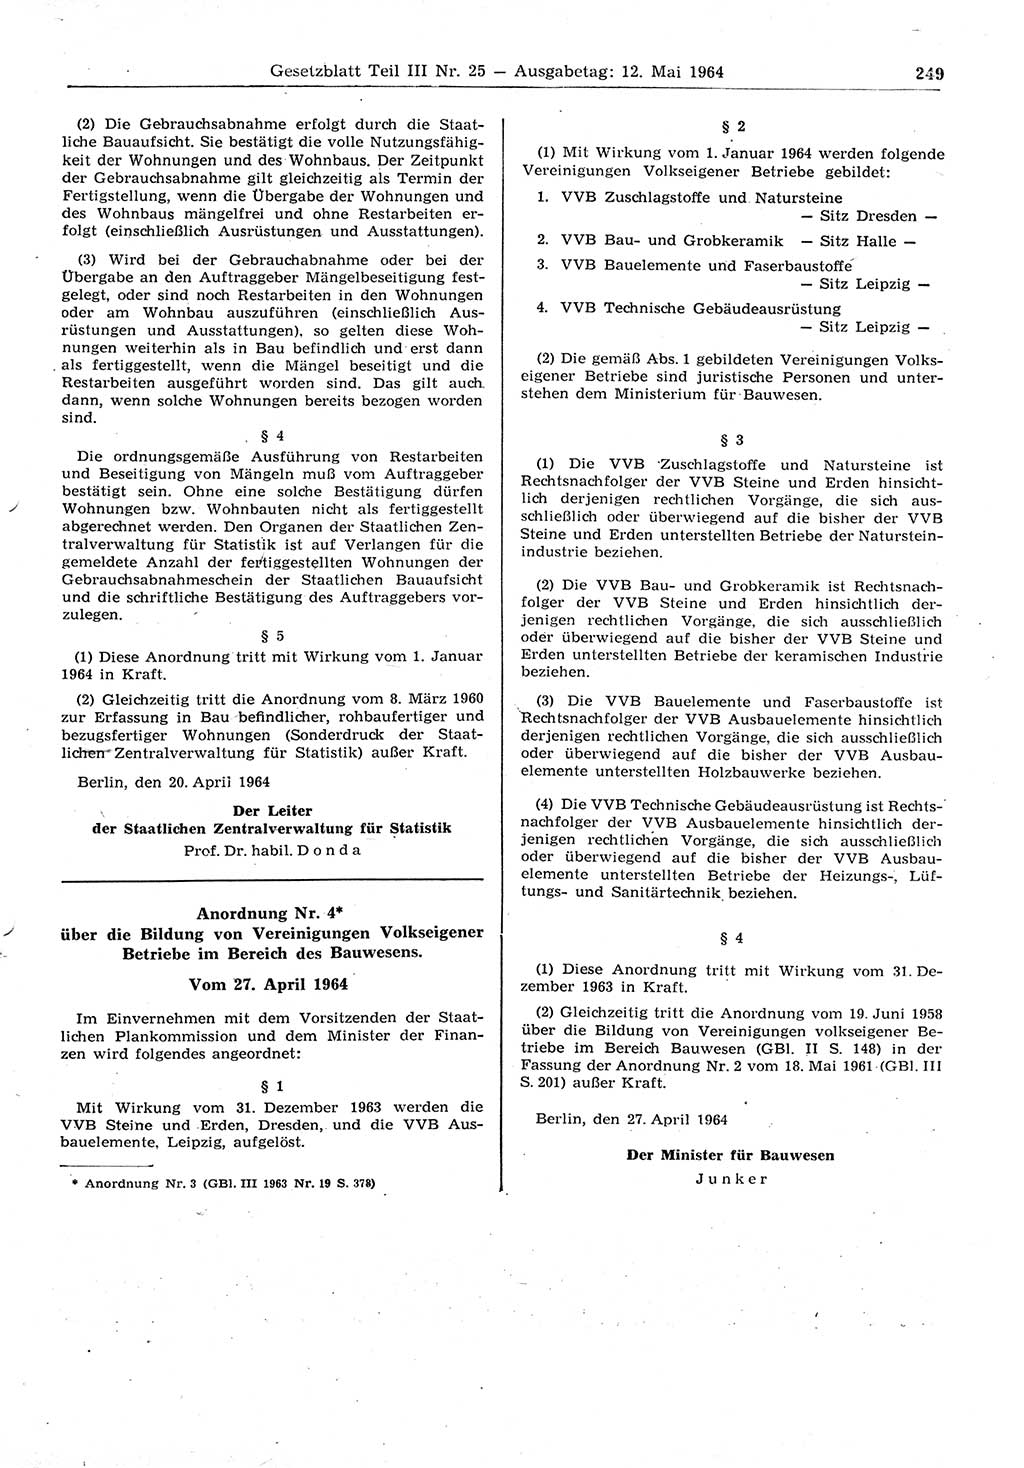 Gesetzblatt (GBl.) der Deutschen Demokratischen Republik (DDR) Teil ⅠⅠⅠ 1964, Seite 249 (GBl. DDR ⅠⅠⅠ 1964, S. 249)